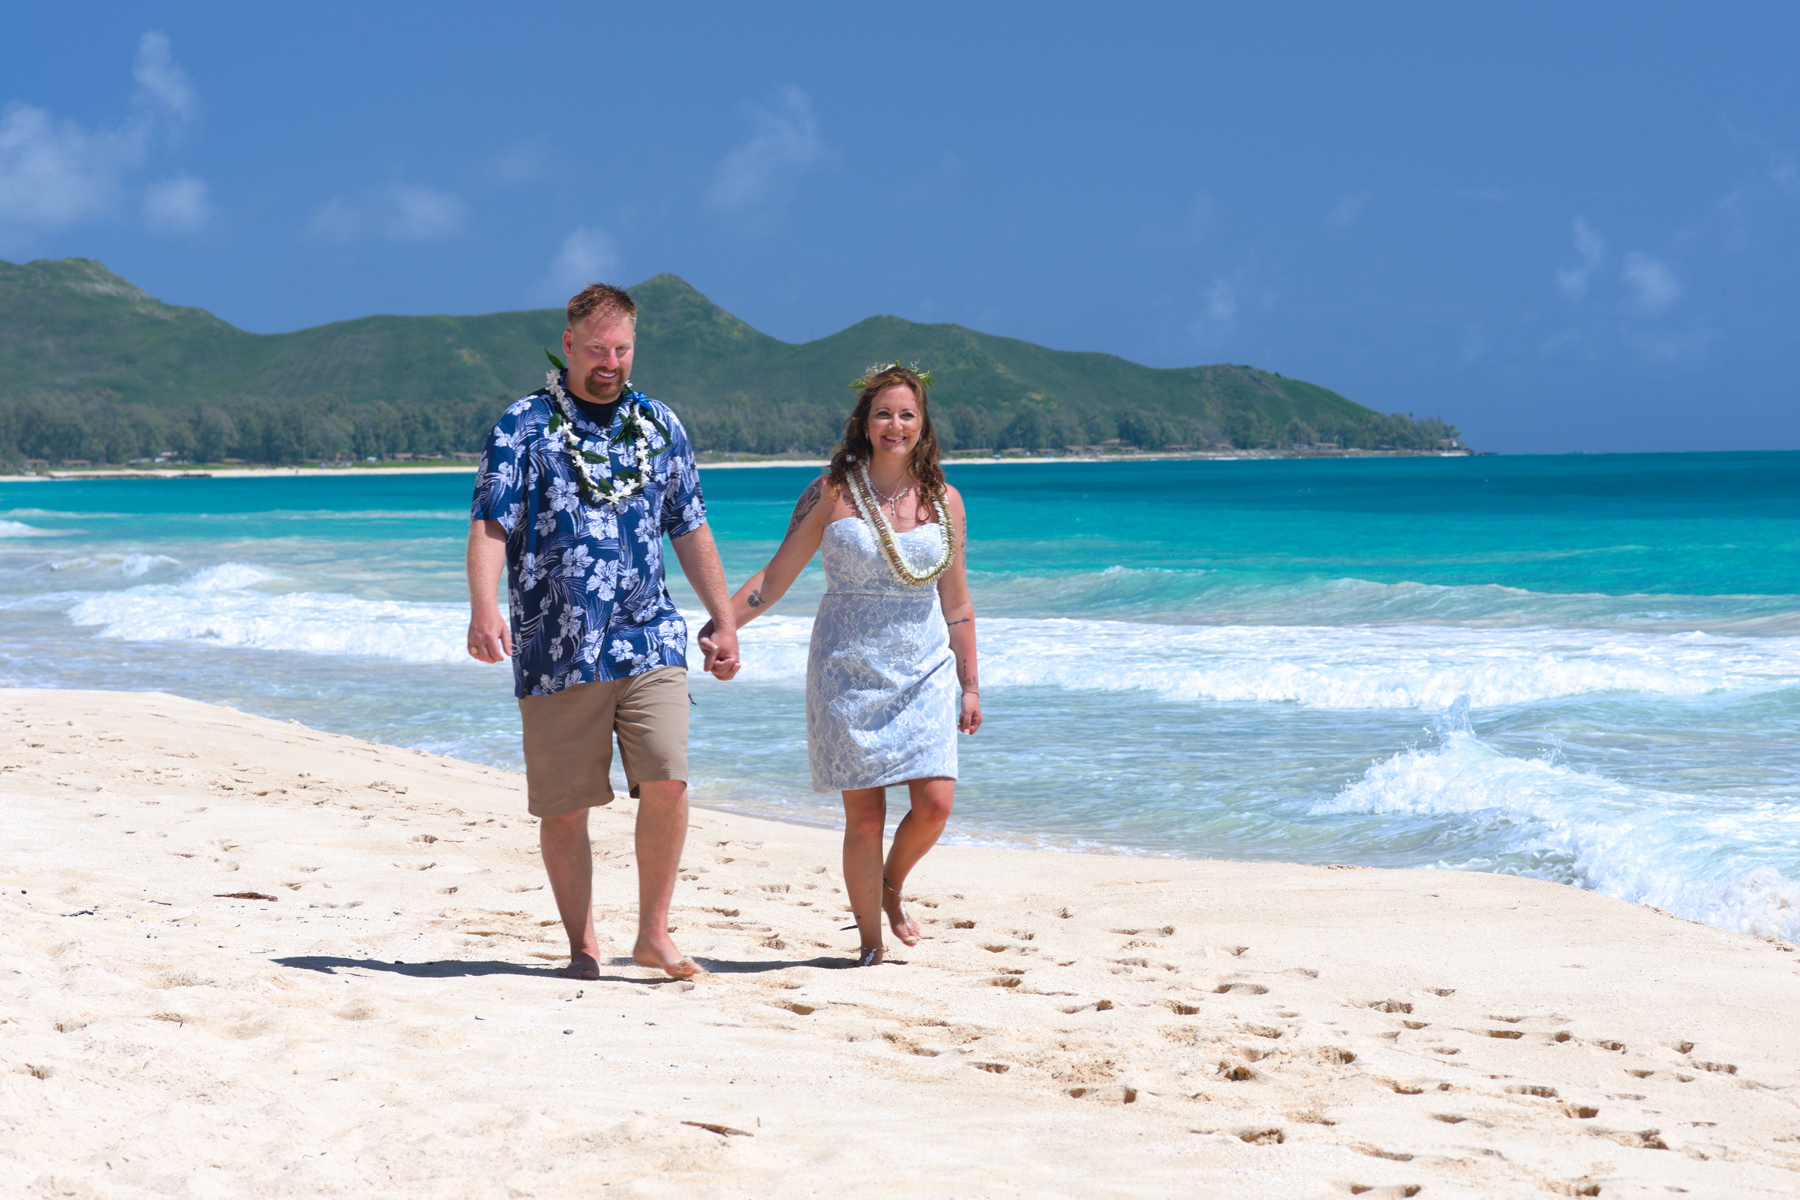 Hire Honolulu's Best Wedding Planner To Arrange Your Hawaiian Beach Nuptials